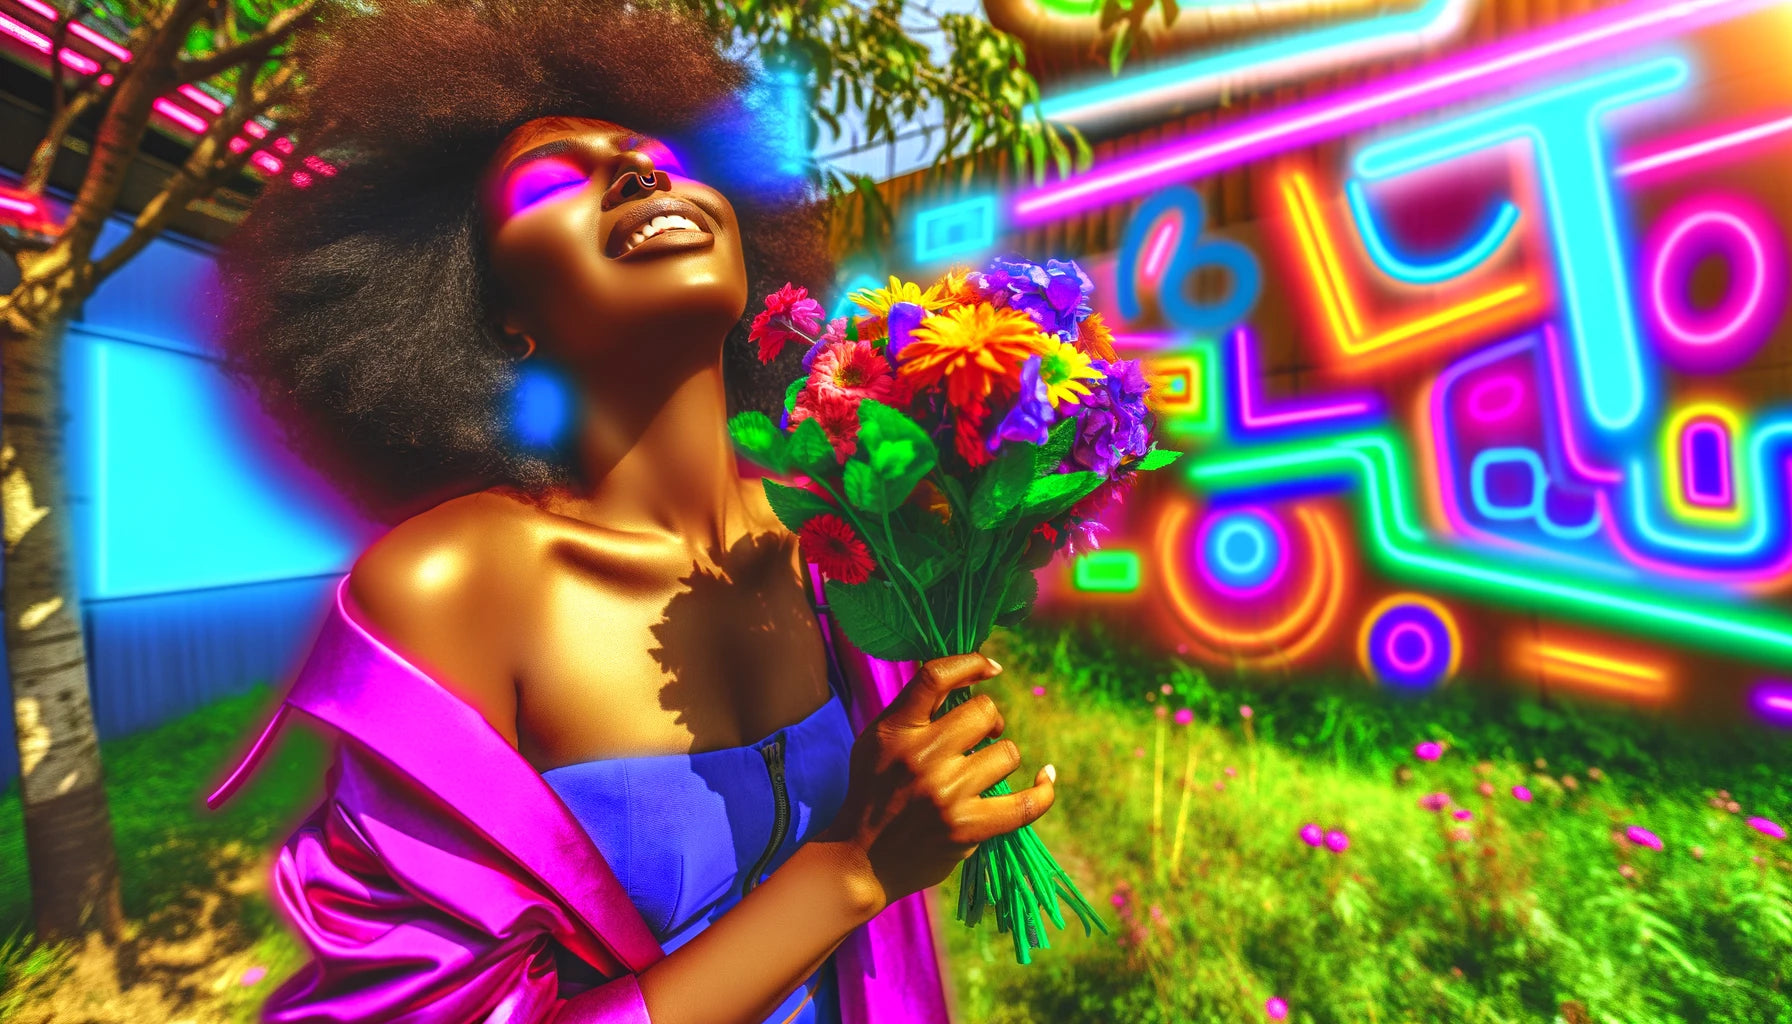 Conto Erótico - Primavera Bissexual. Imagem criada por IA de uma mulher tomando sol e segurando flores.